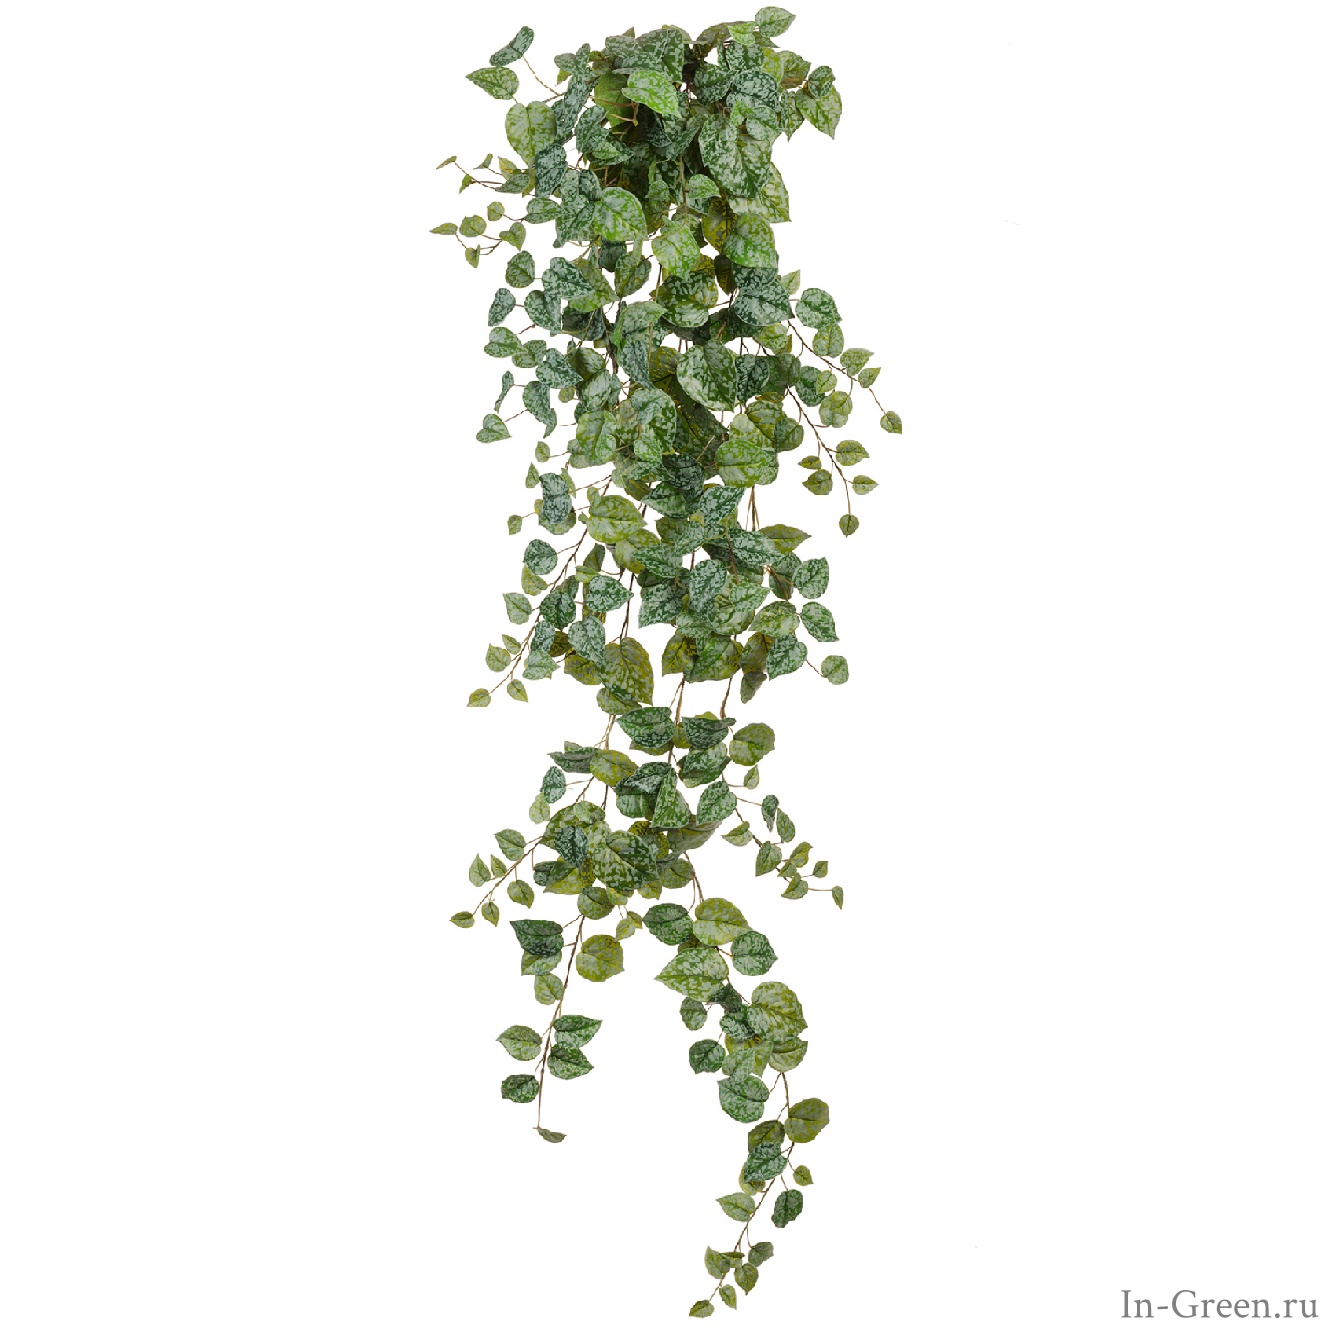 Сциндапсус Пиксус серебристо-зелёный (sensitive botanic), от 60 до 170 см